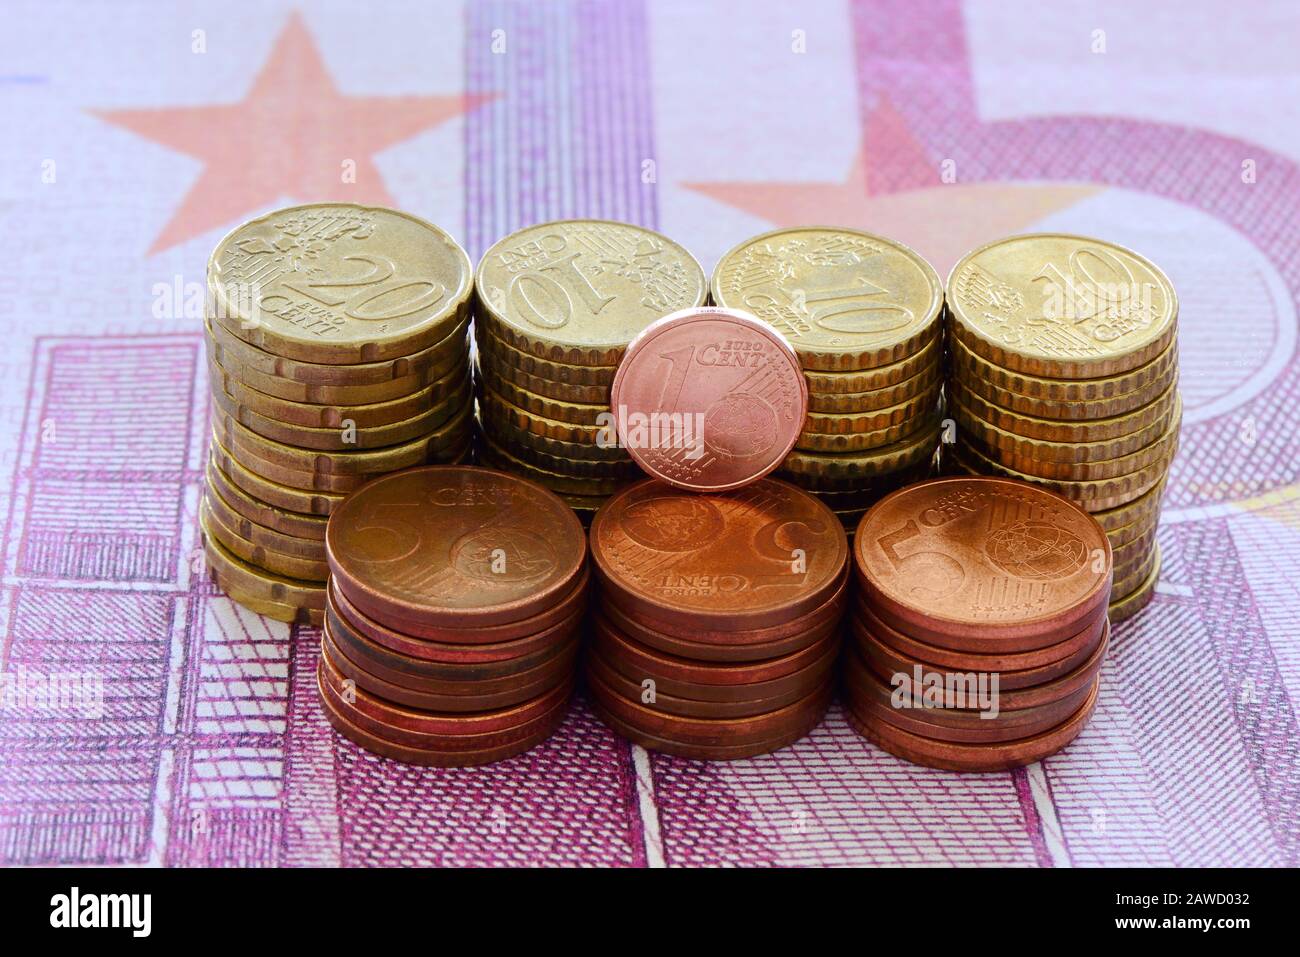 Selon les médias, la nouvelle Commission européenne prévoit d'abolir toutes les pièces de 1 et 2 cents. Banque D'Images